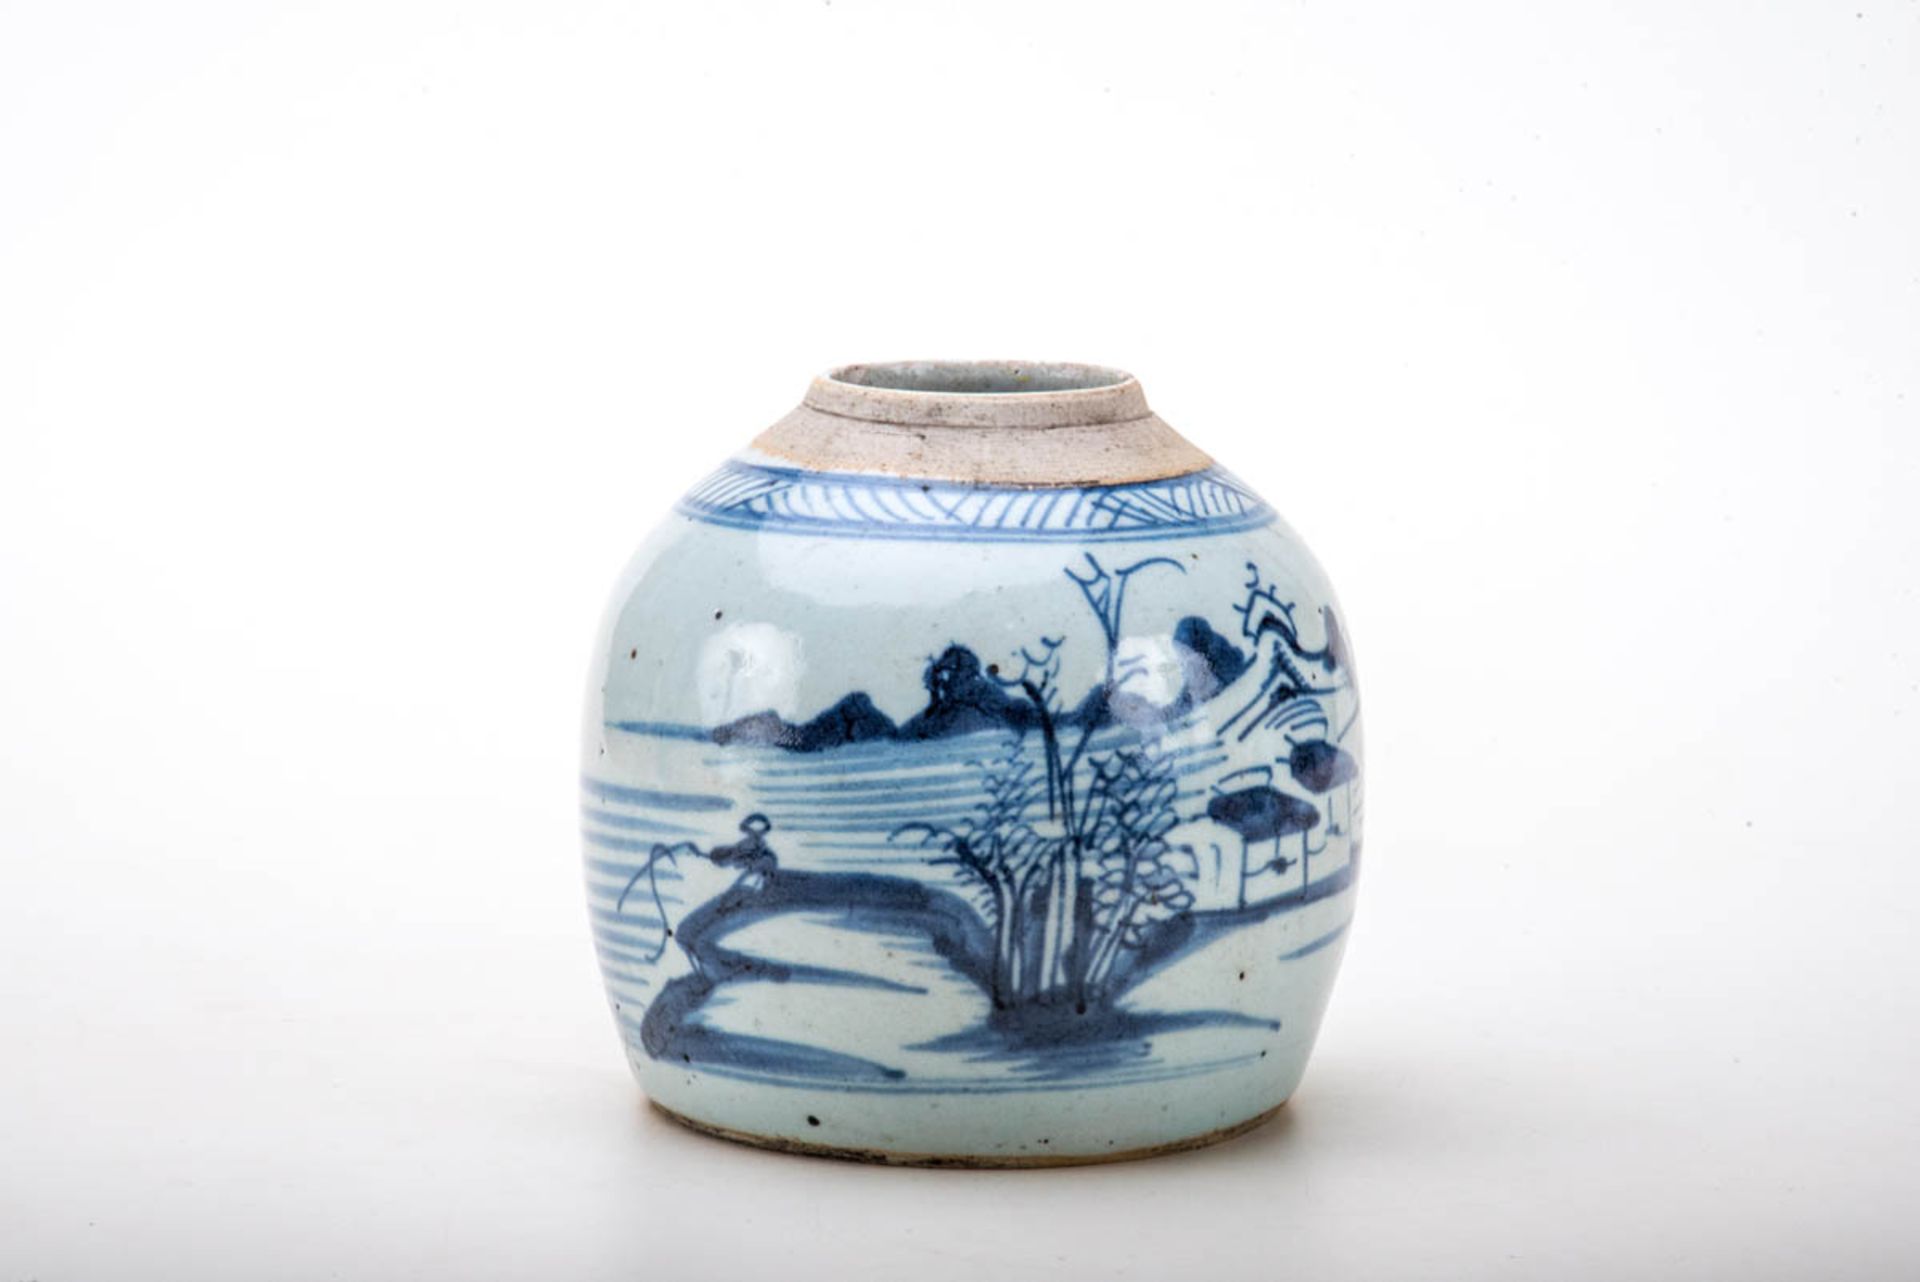 Ingwertopf, China 19. Jh.Porzellan, grau glasiert, unter der Glasur mit chinesischer Landschaft in